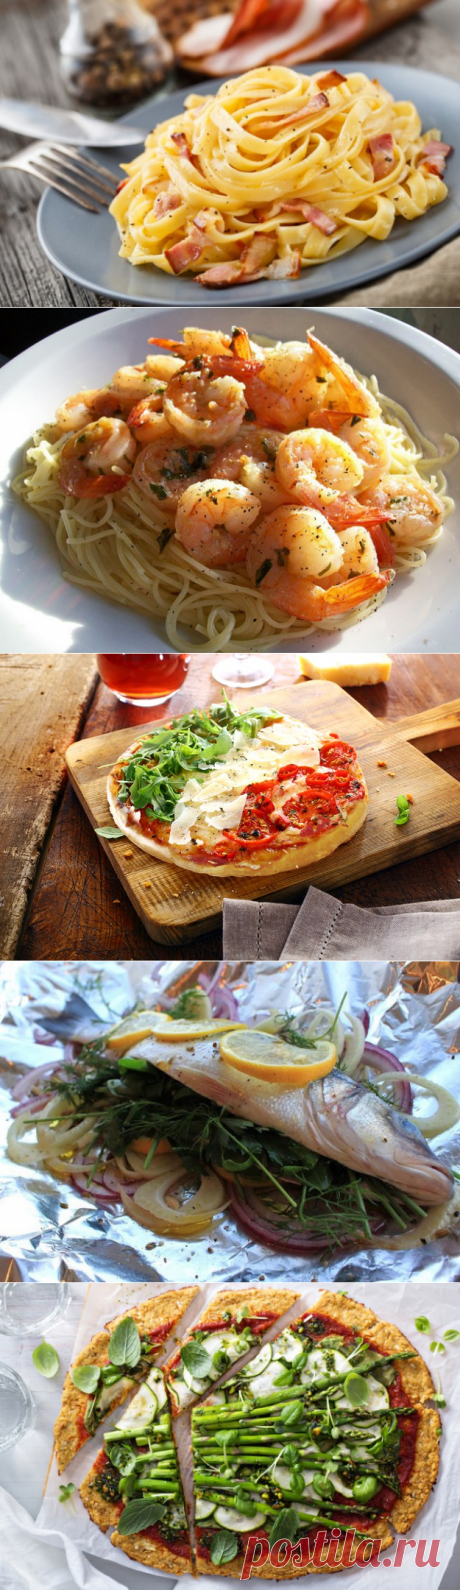 11 секретов итальянской кухни, которые нужно знать